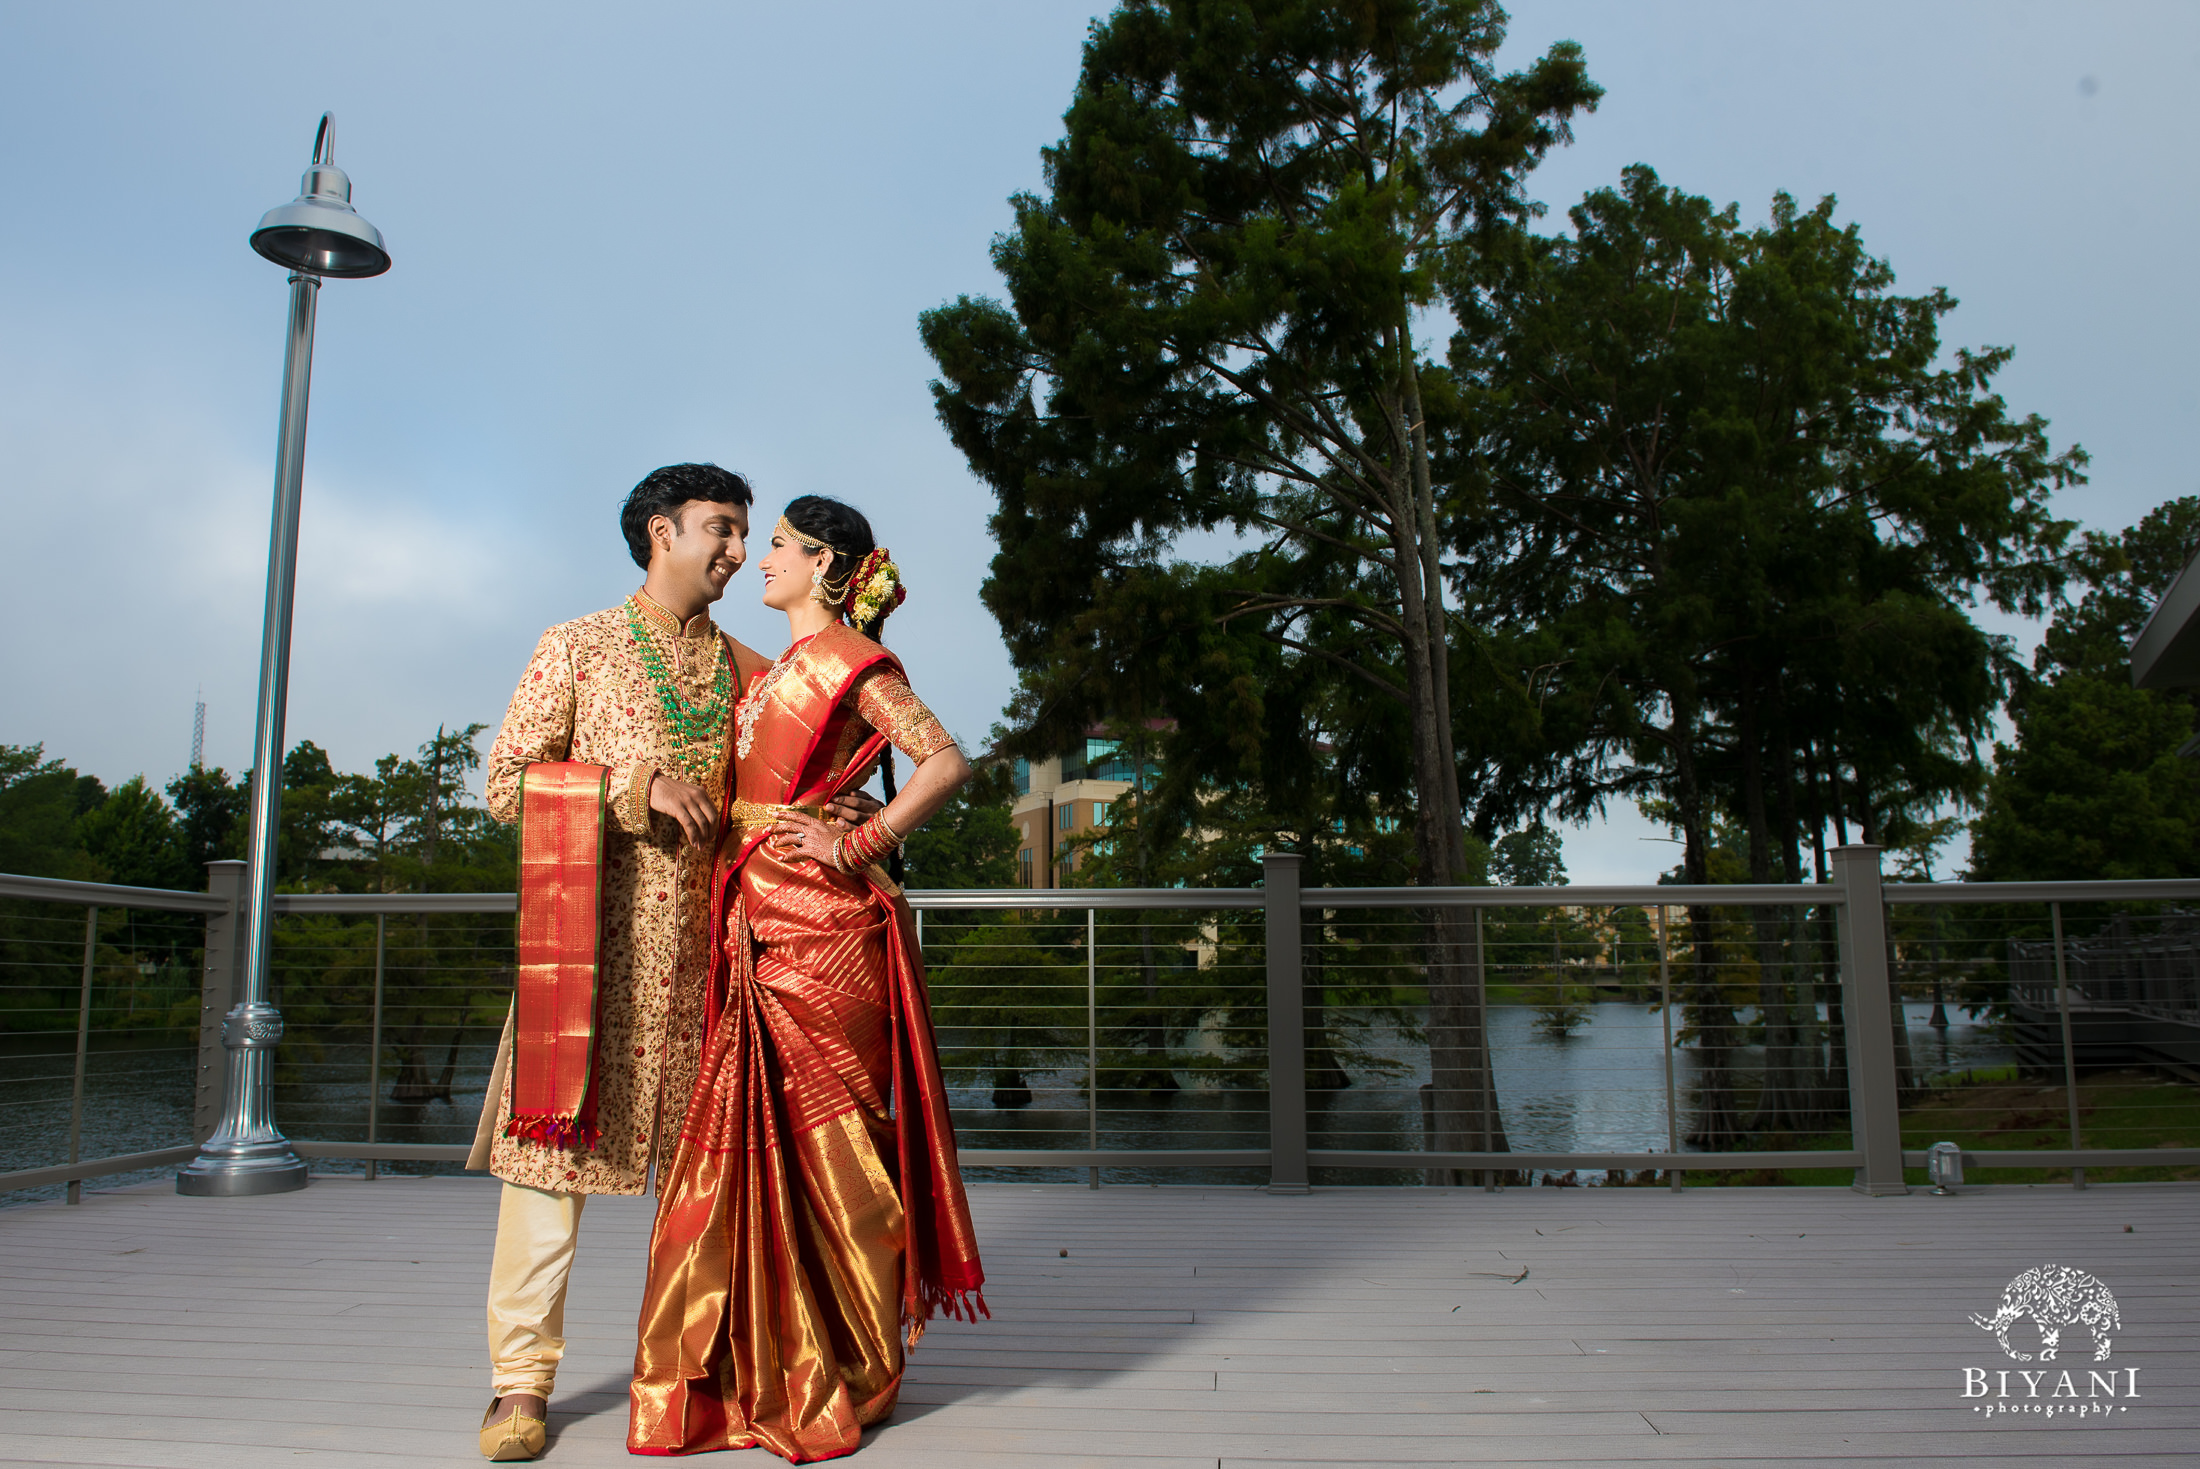 Telugu bride and groom